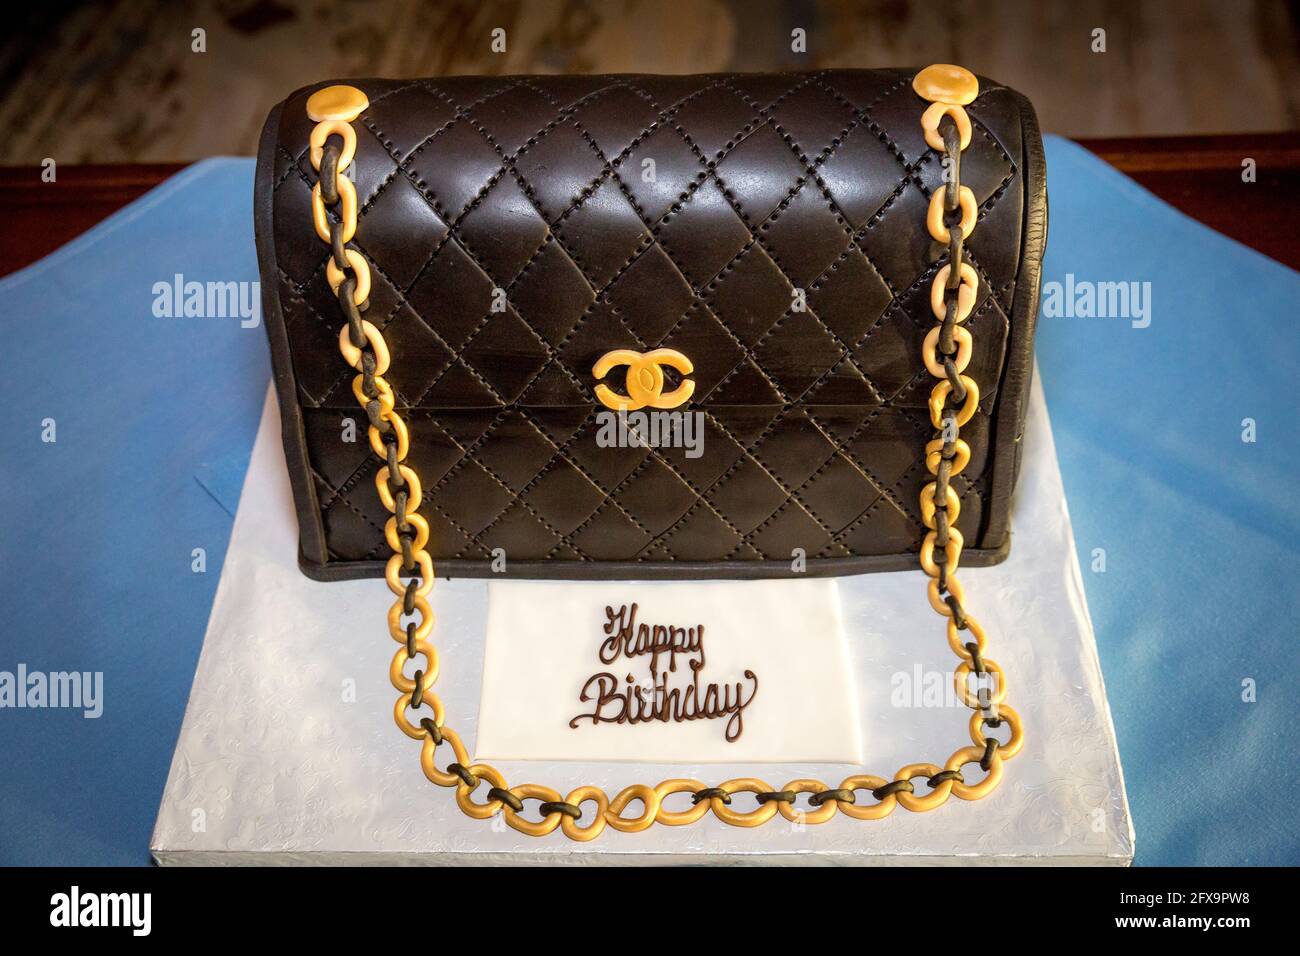 Chanel a inspiré un gâteau d'anniversaire en forme de sac à main lors d'une fête d'anniversaire à Naples, Floride, États-Unis Banque D'Images